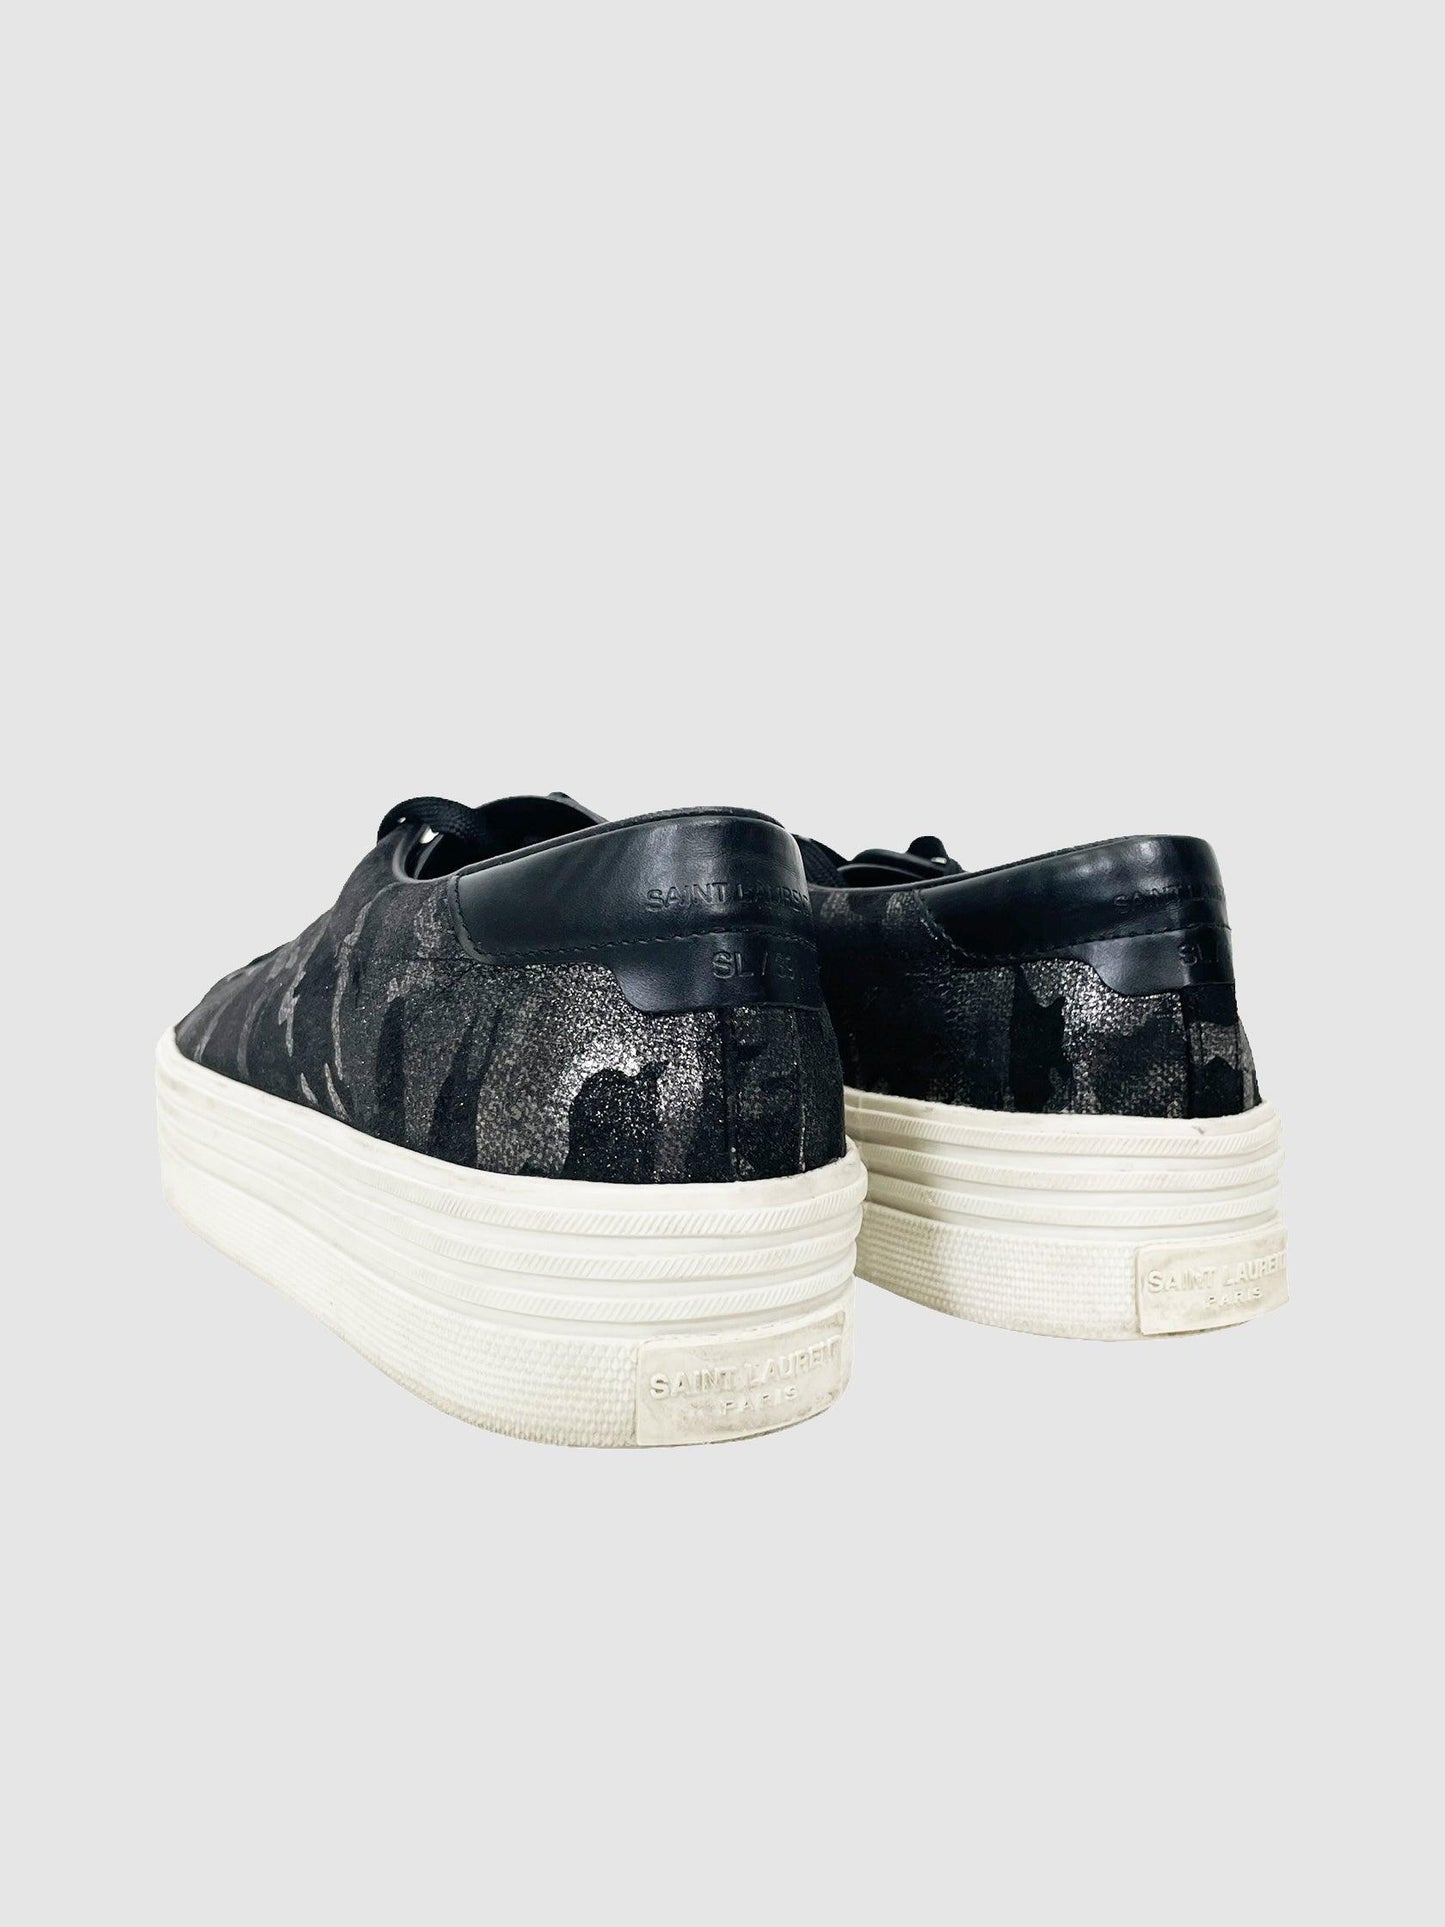 Saint Laurent Leather Sneaker - Size 36.5 - Second Nature Boutique